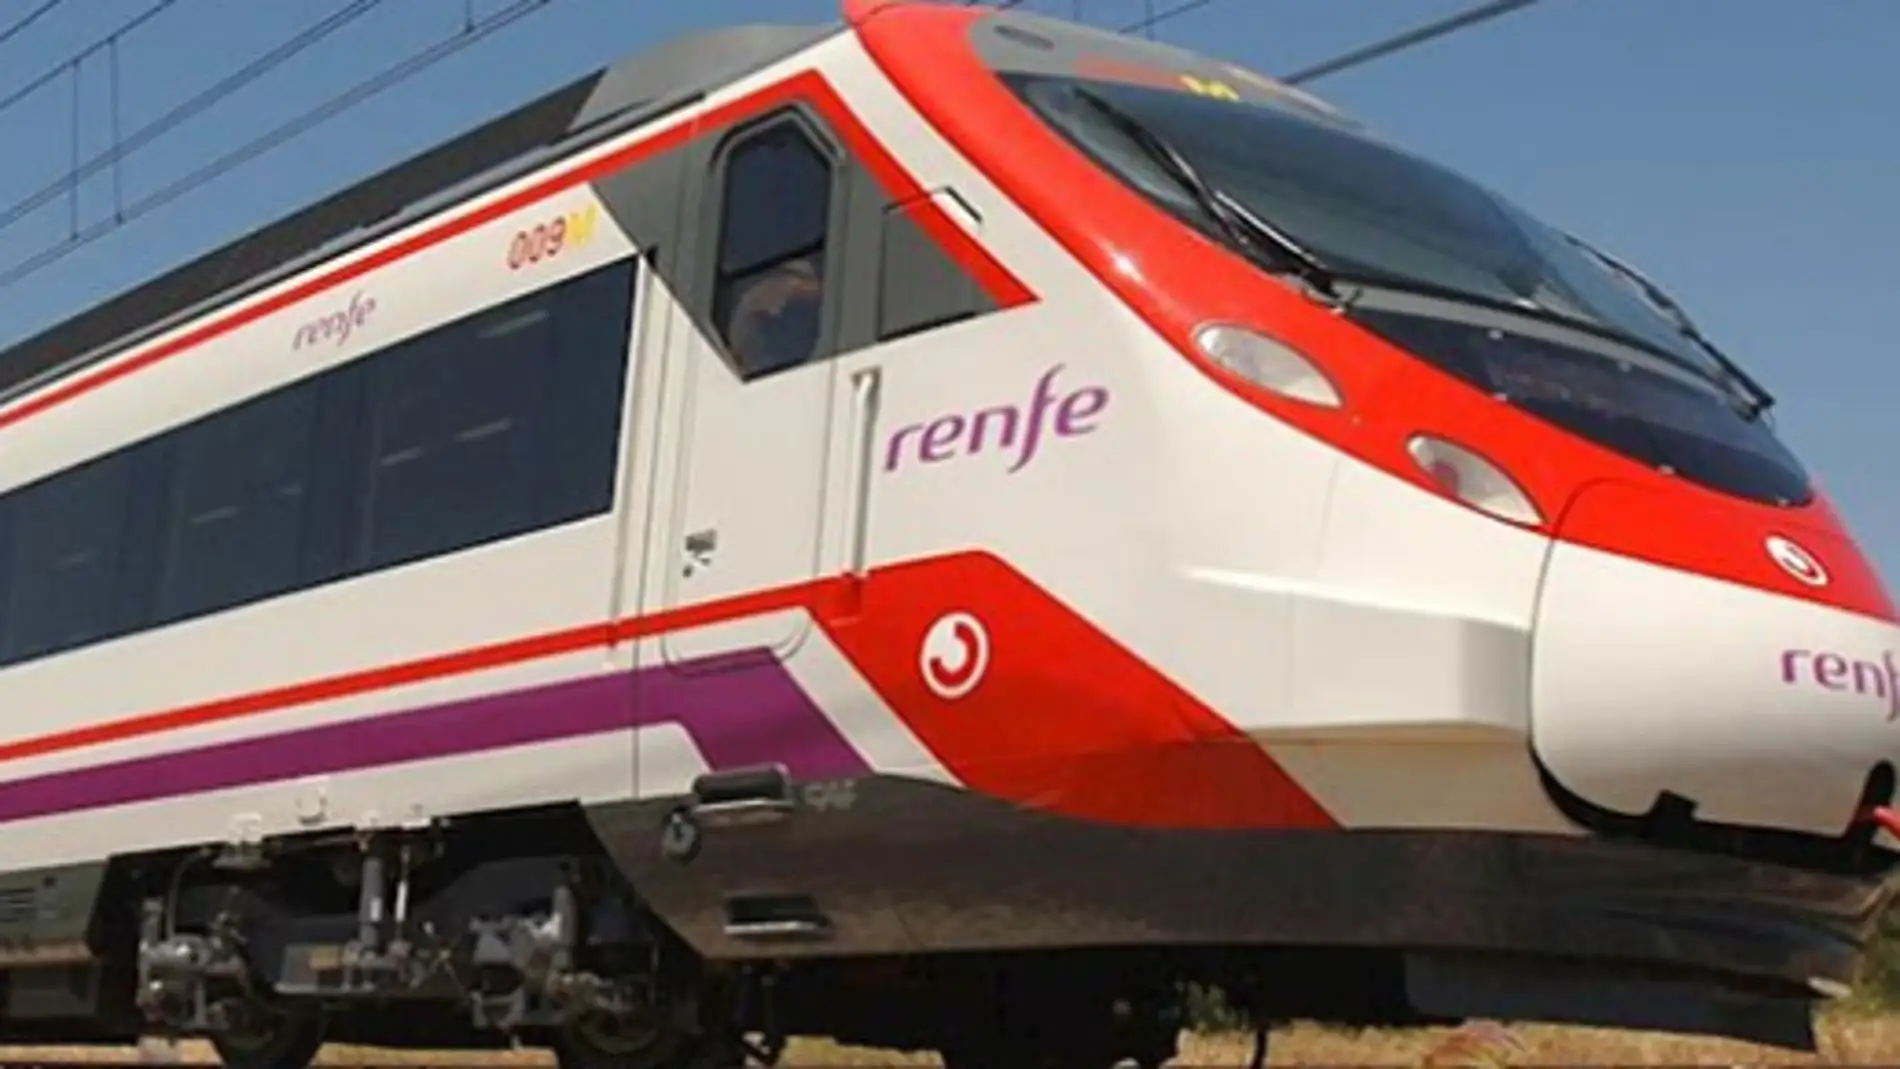 Renfe adapta los horarios de los servicios de Cercanías del Núcleo de Murcia y Alicante durante el verano